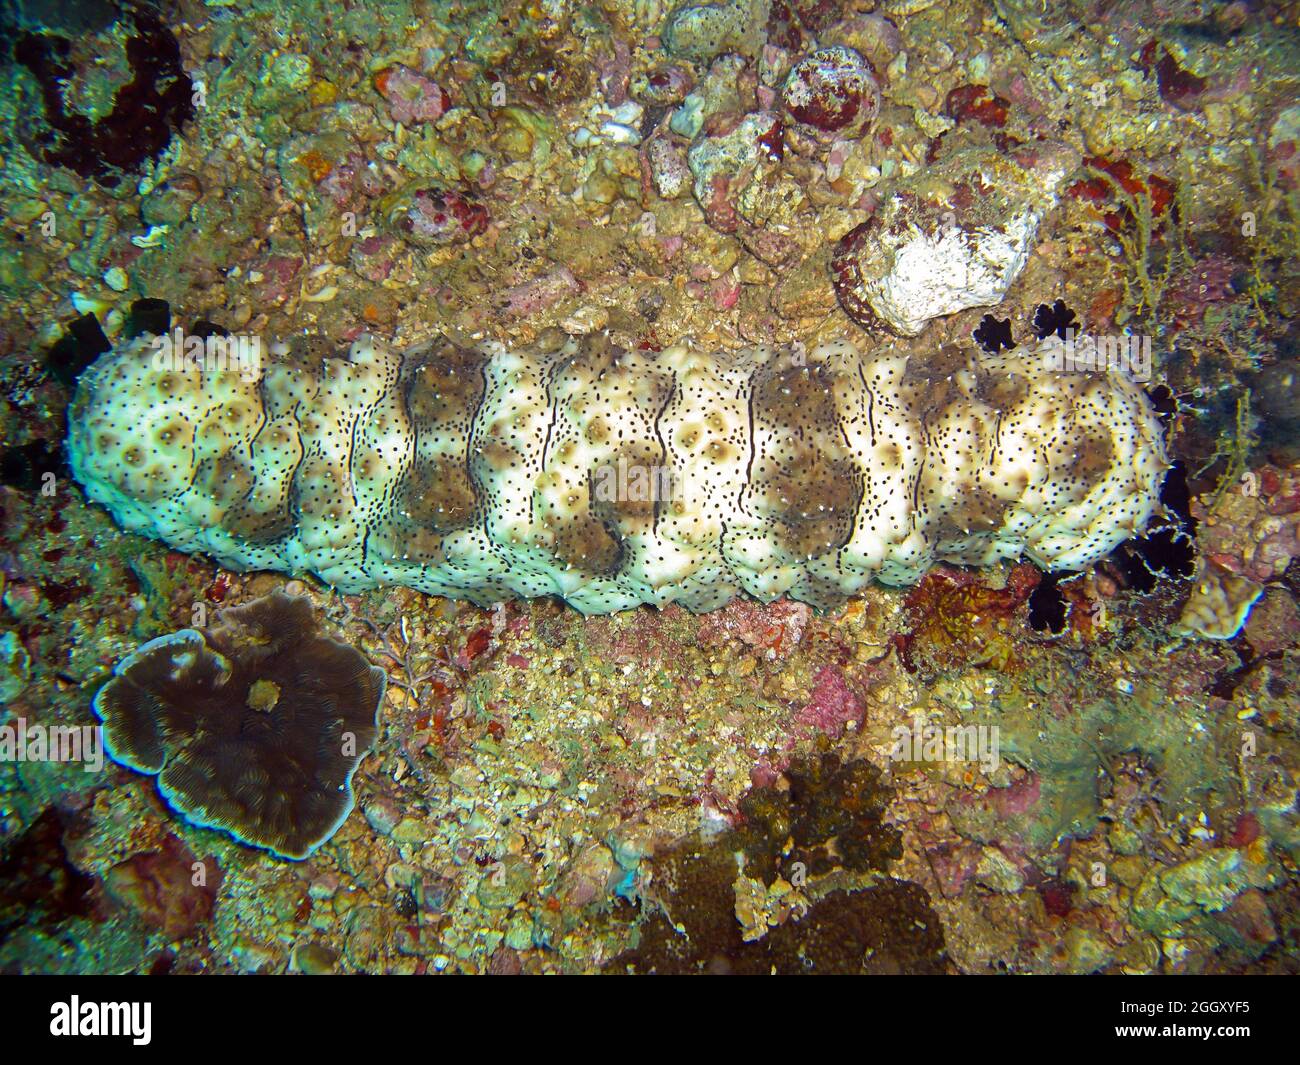 Graeffe sea cucumber (Pearsonothuria Graeffei) on the ground in the filipino sea 3.1.2012 Stock Photo